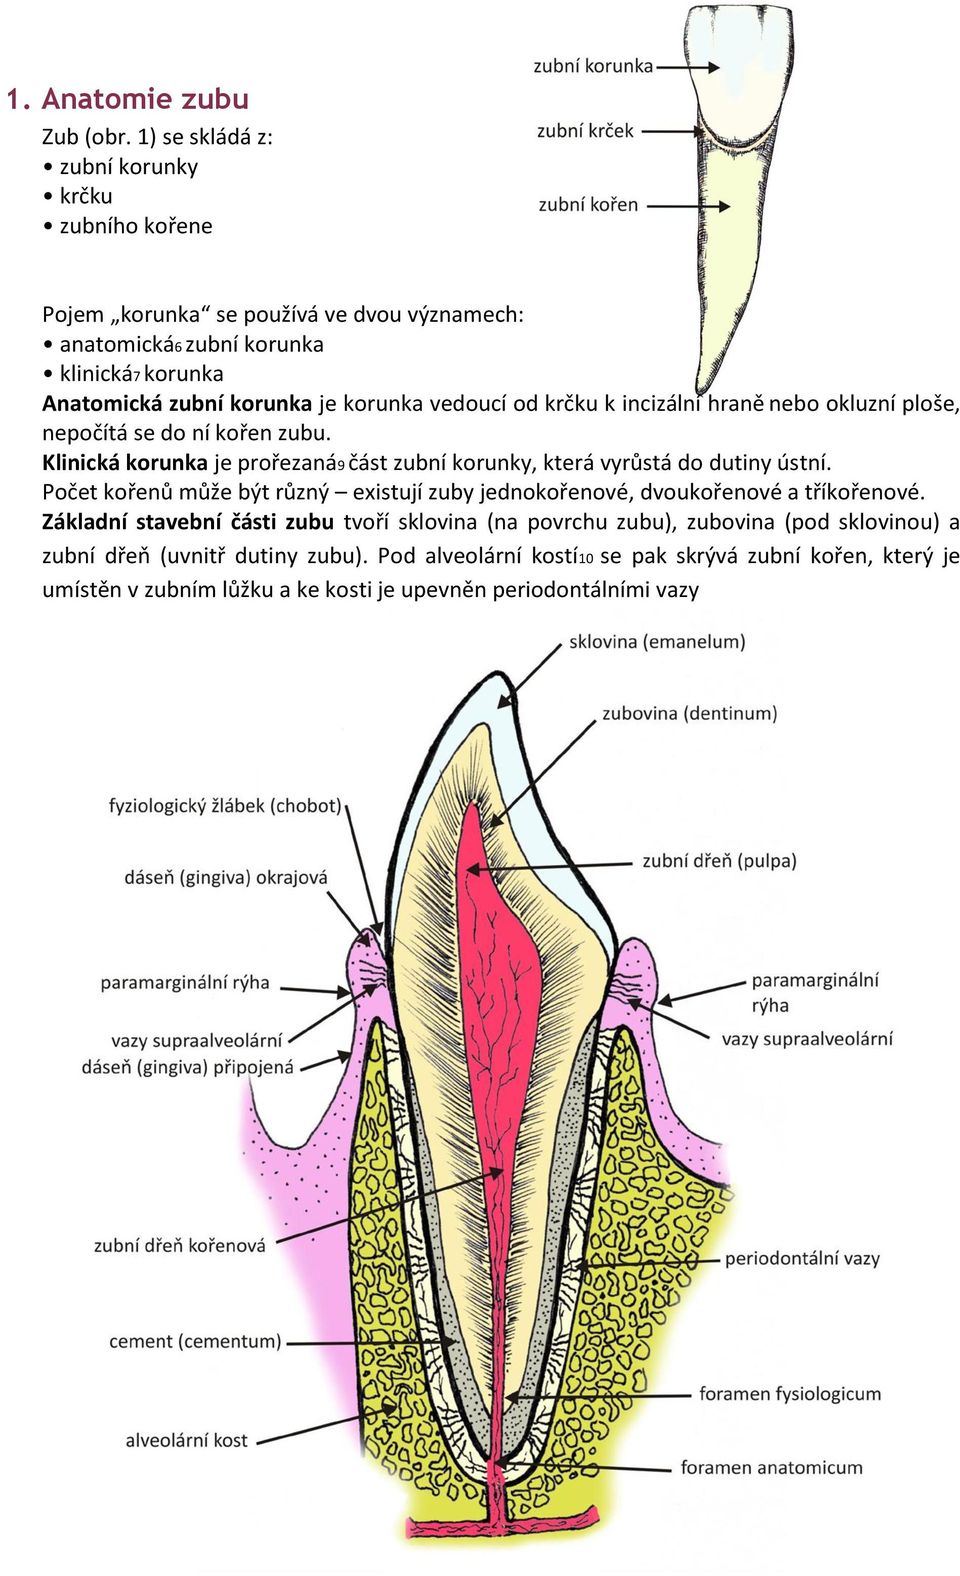 vedoucí od krčku k incizální hraně nebo okluzní ploše, nepočítá se do ní kořen zubu. Klinická korunka je prořezaná9 část zubní korunky, která vyrůstá do dutiny ústní.